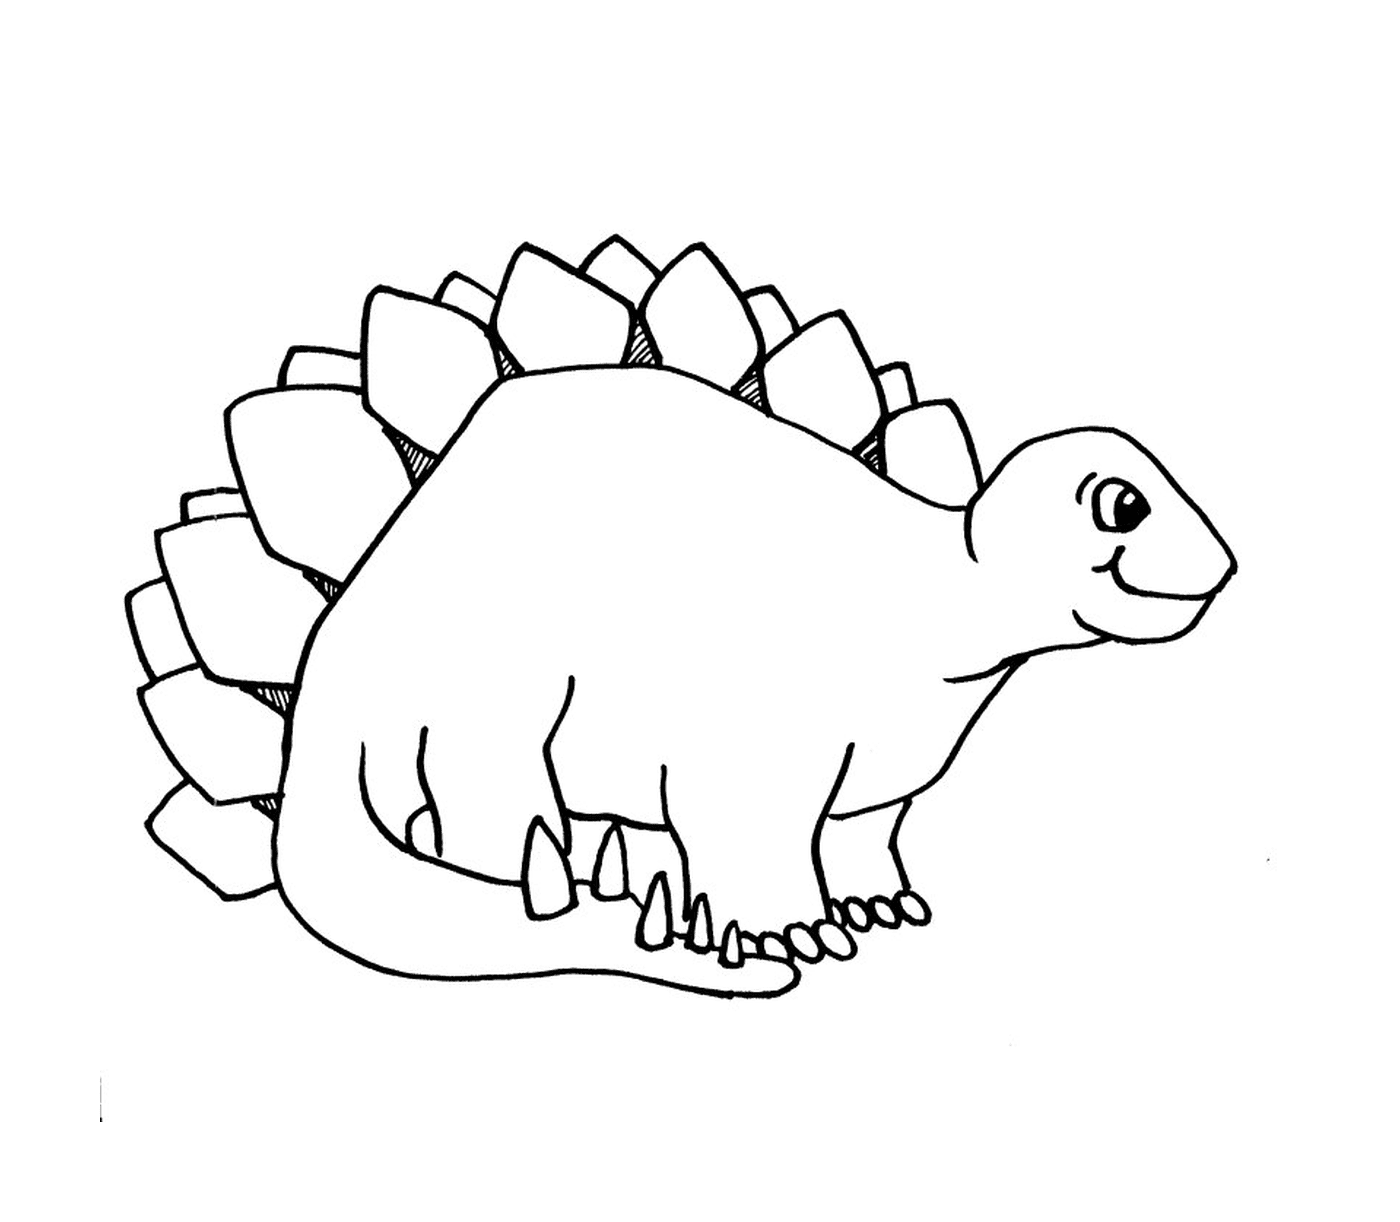  Un estegosaurio 